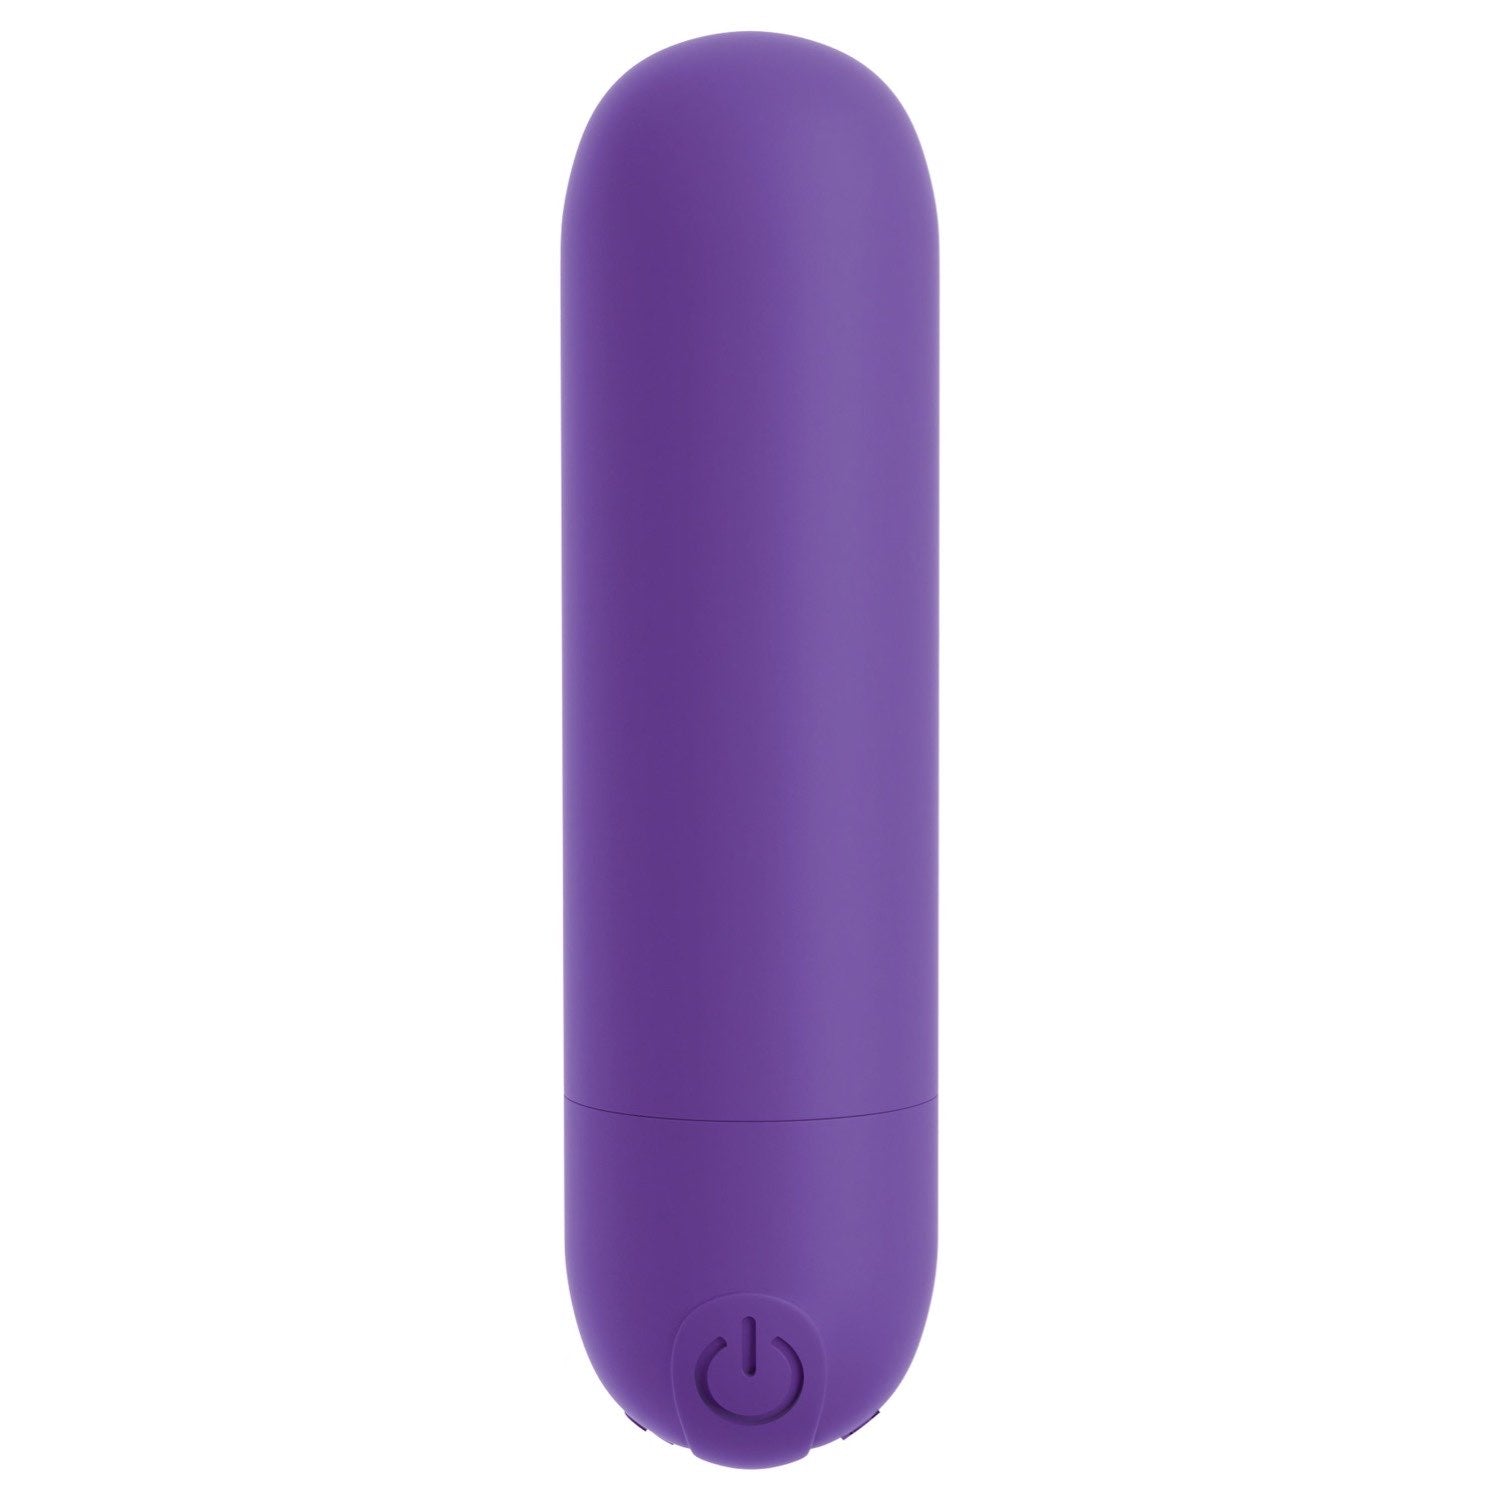 我的天啊！ 我的天啊！ Bullets #Play - 紫色 USB 可充电子弹头 by Pipedream